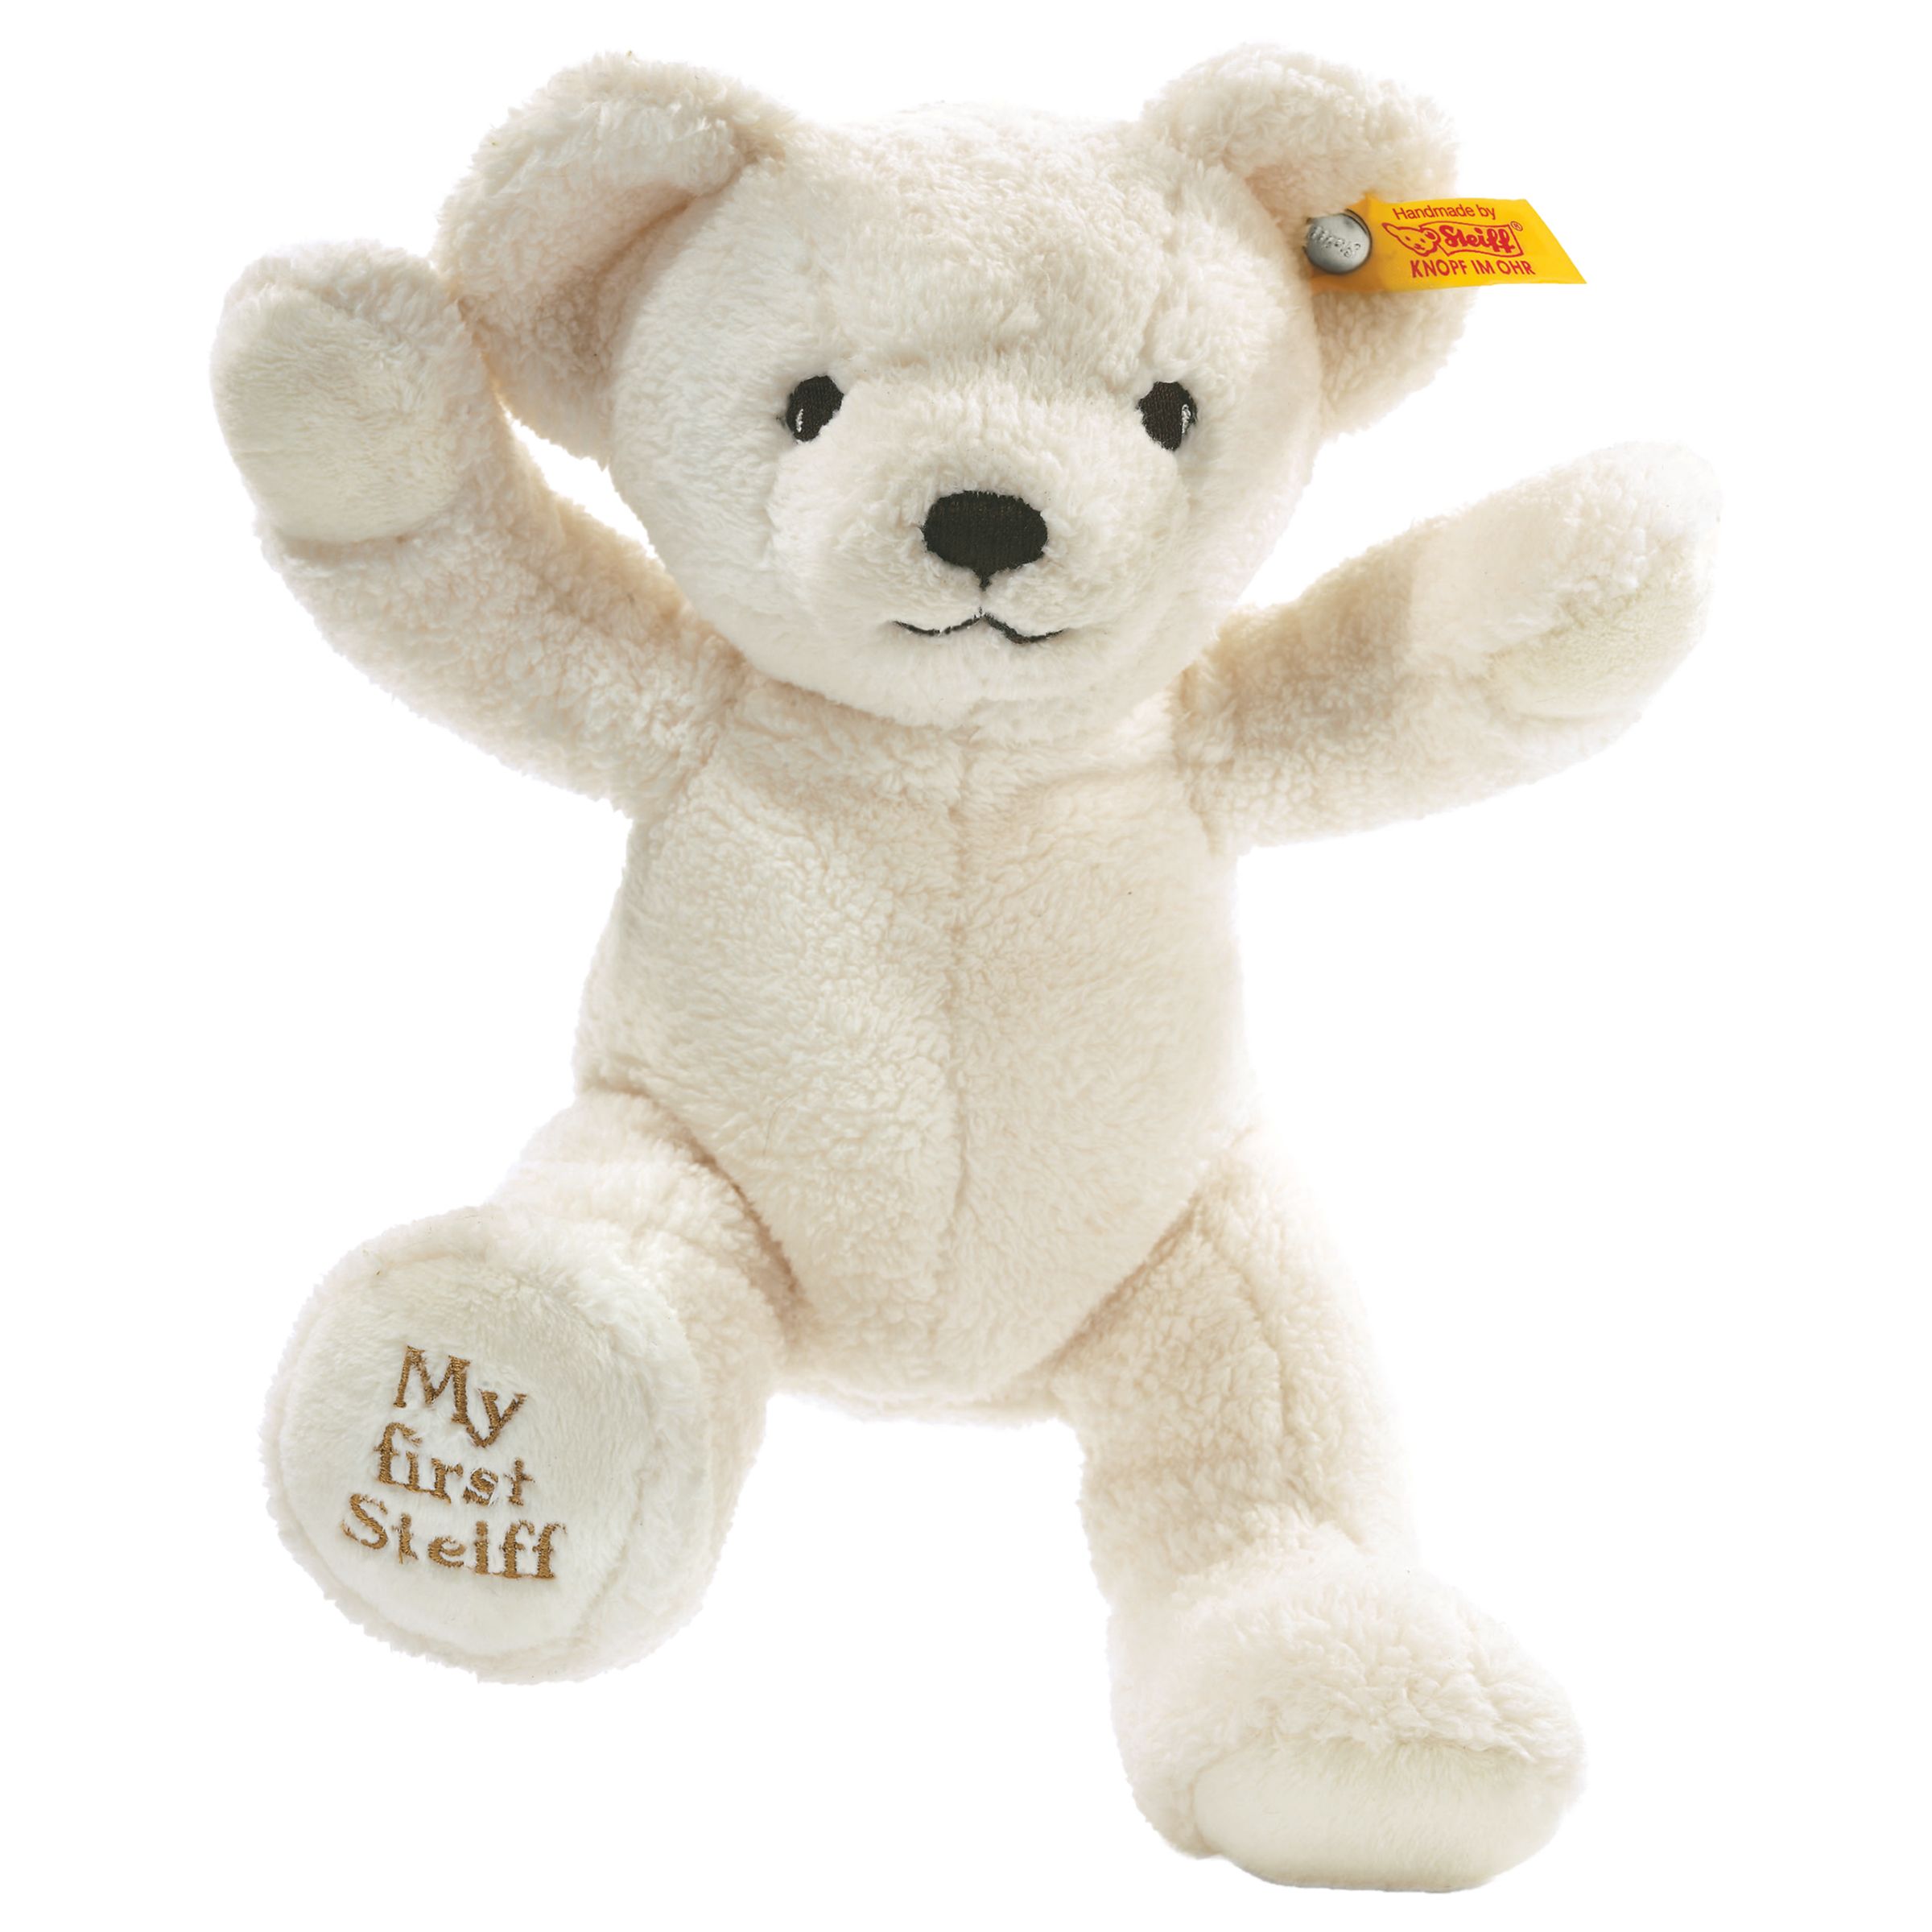 teddy bear soft toy online shopping